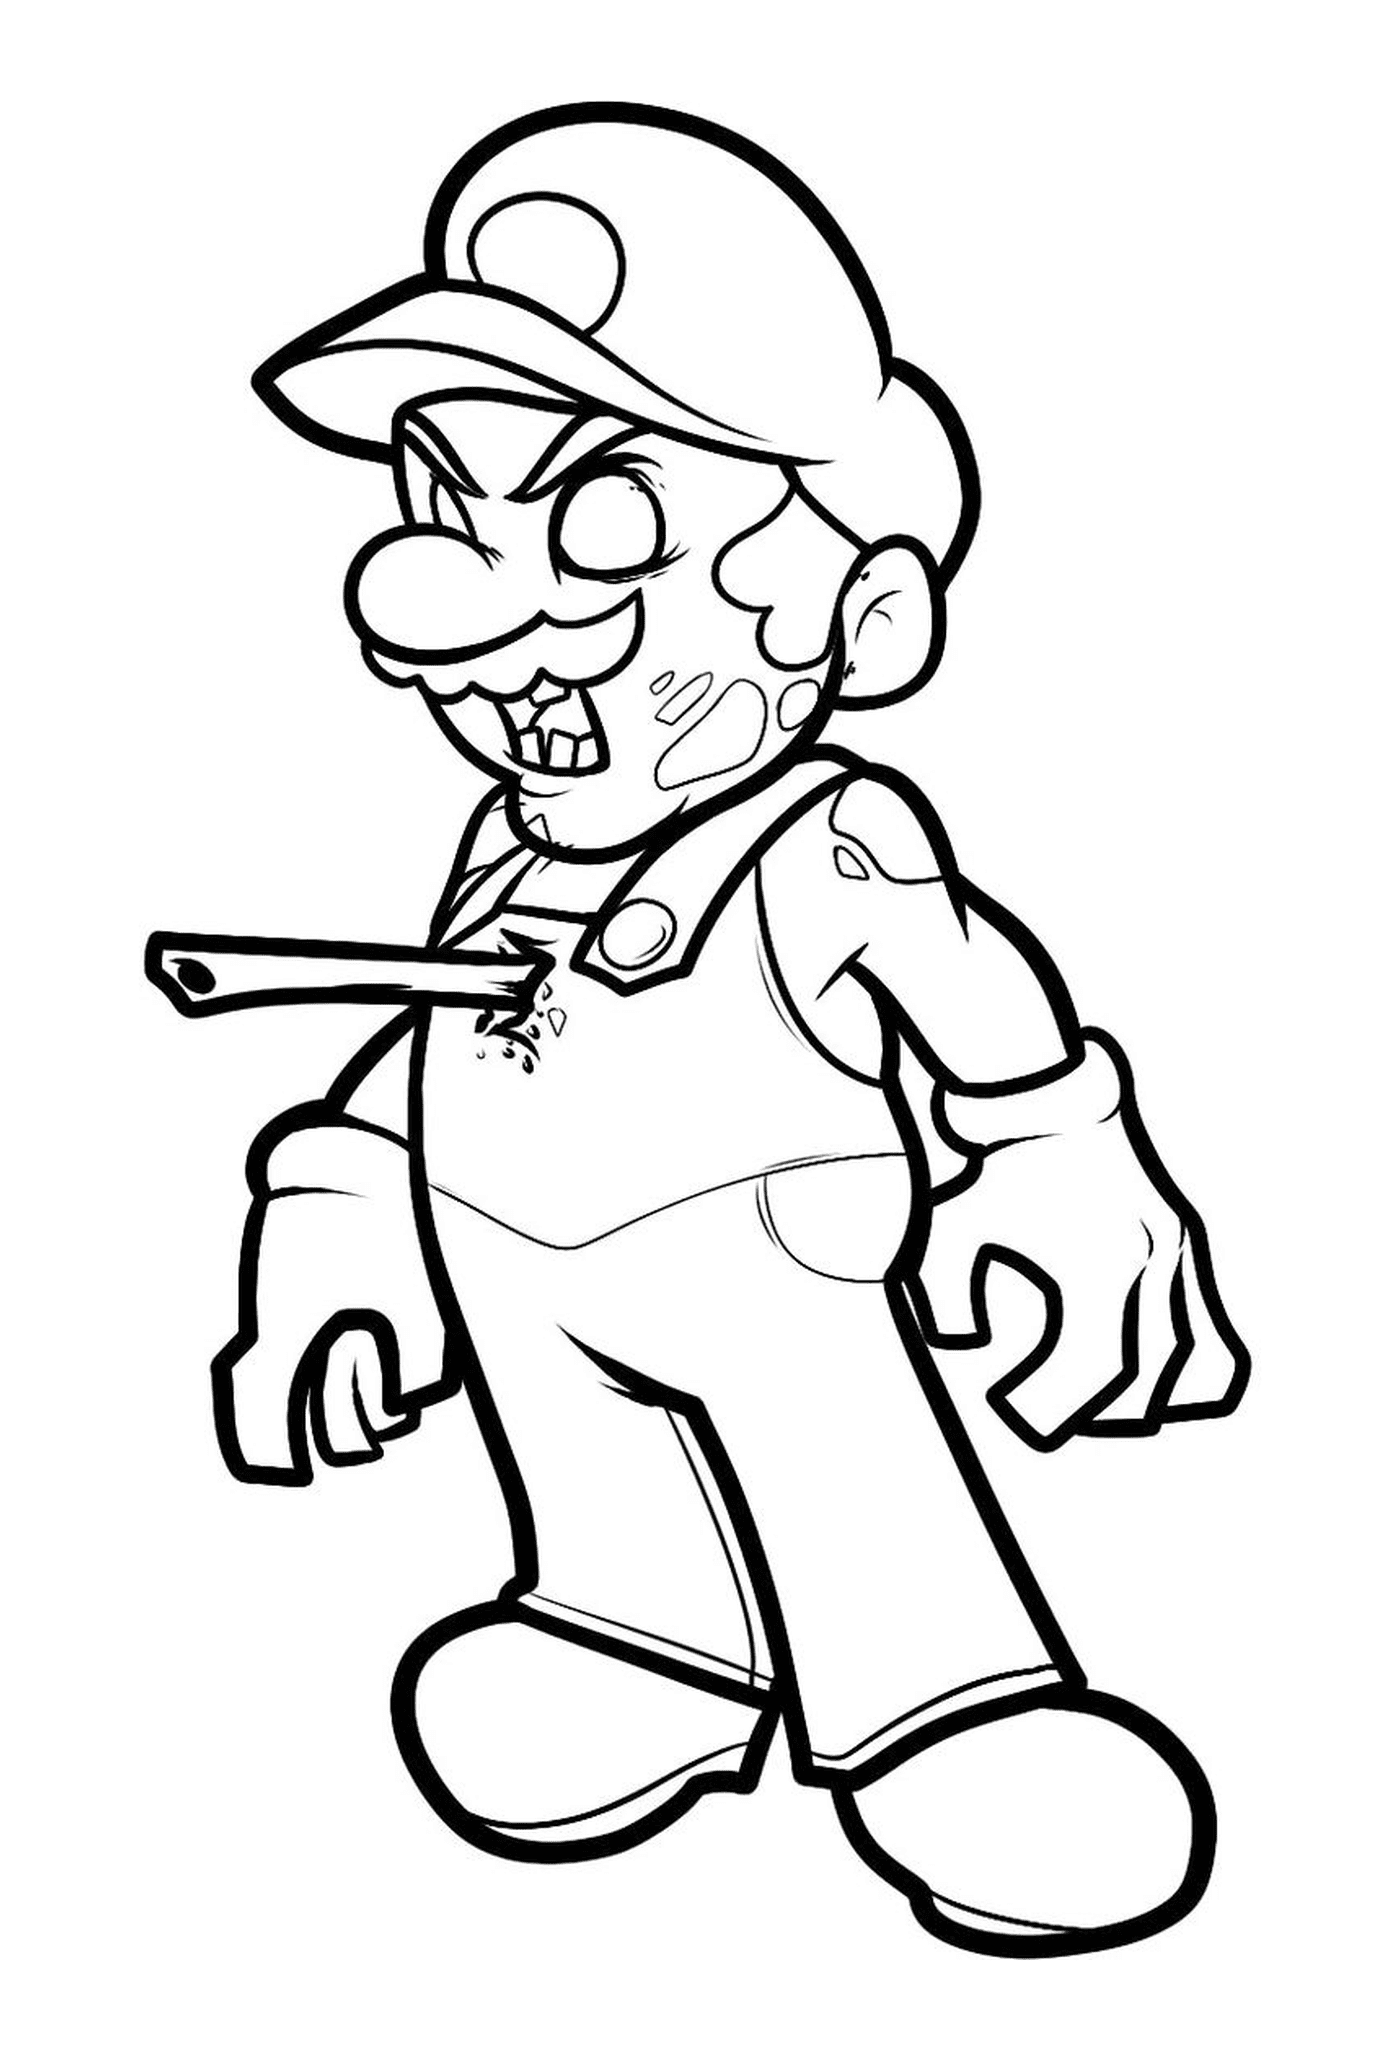  Mario zombie 